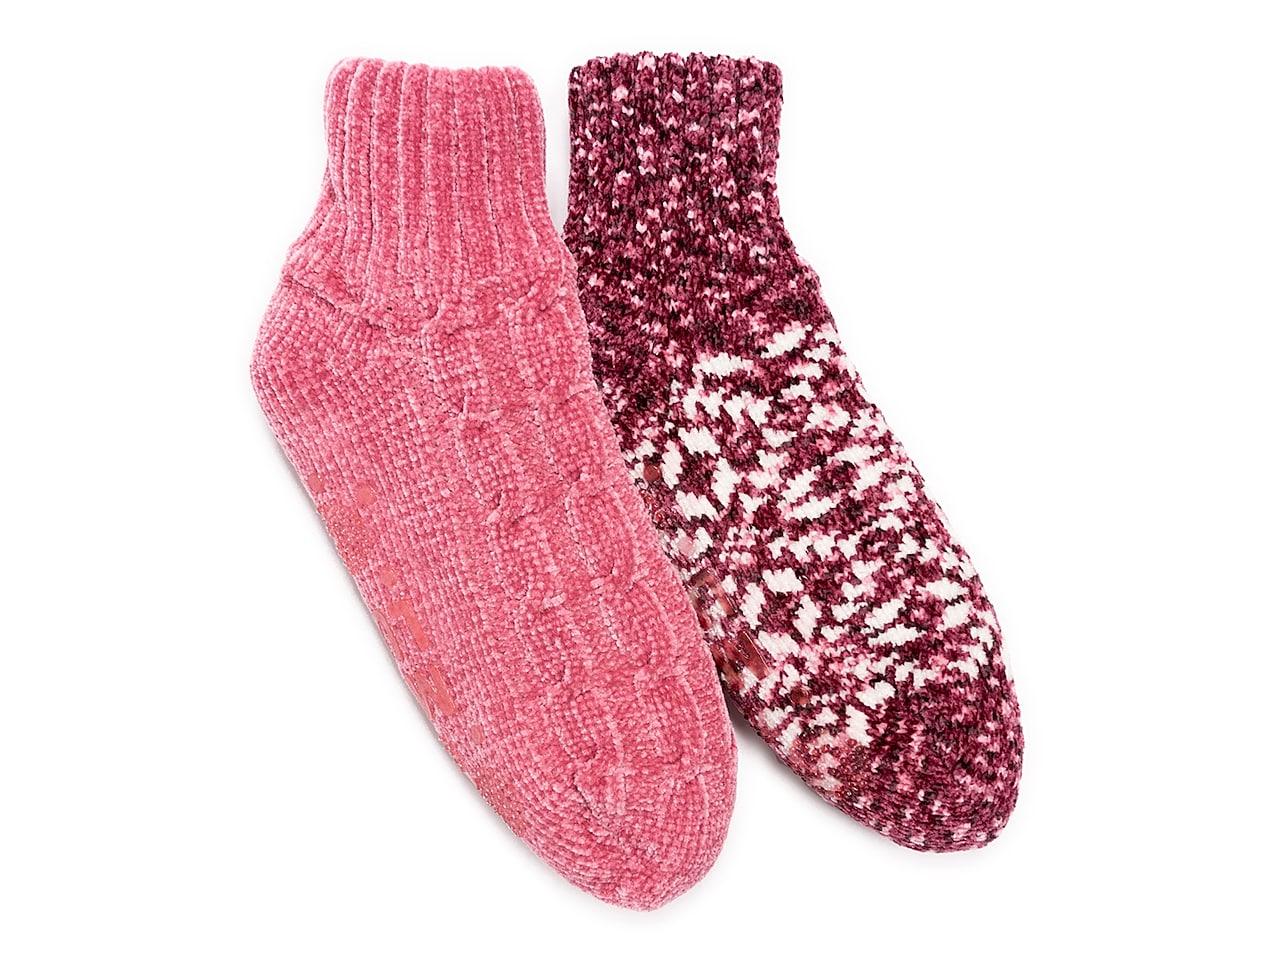 Cozy Chenille Slipper Socks – Oleander Floral Design